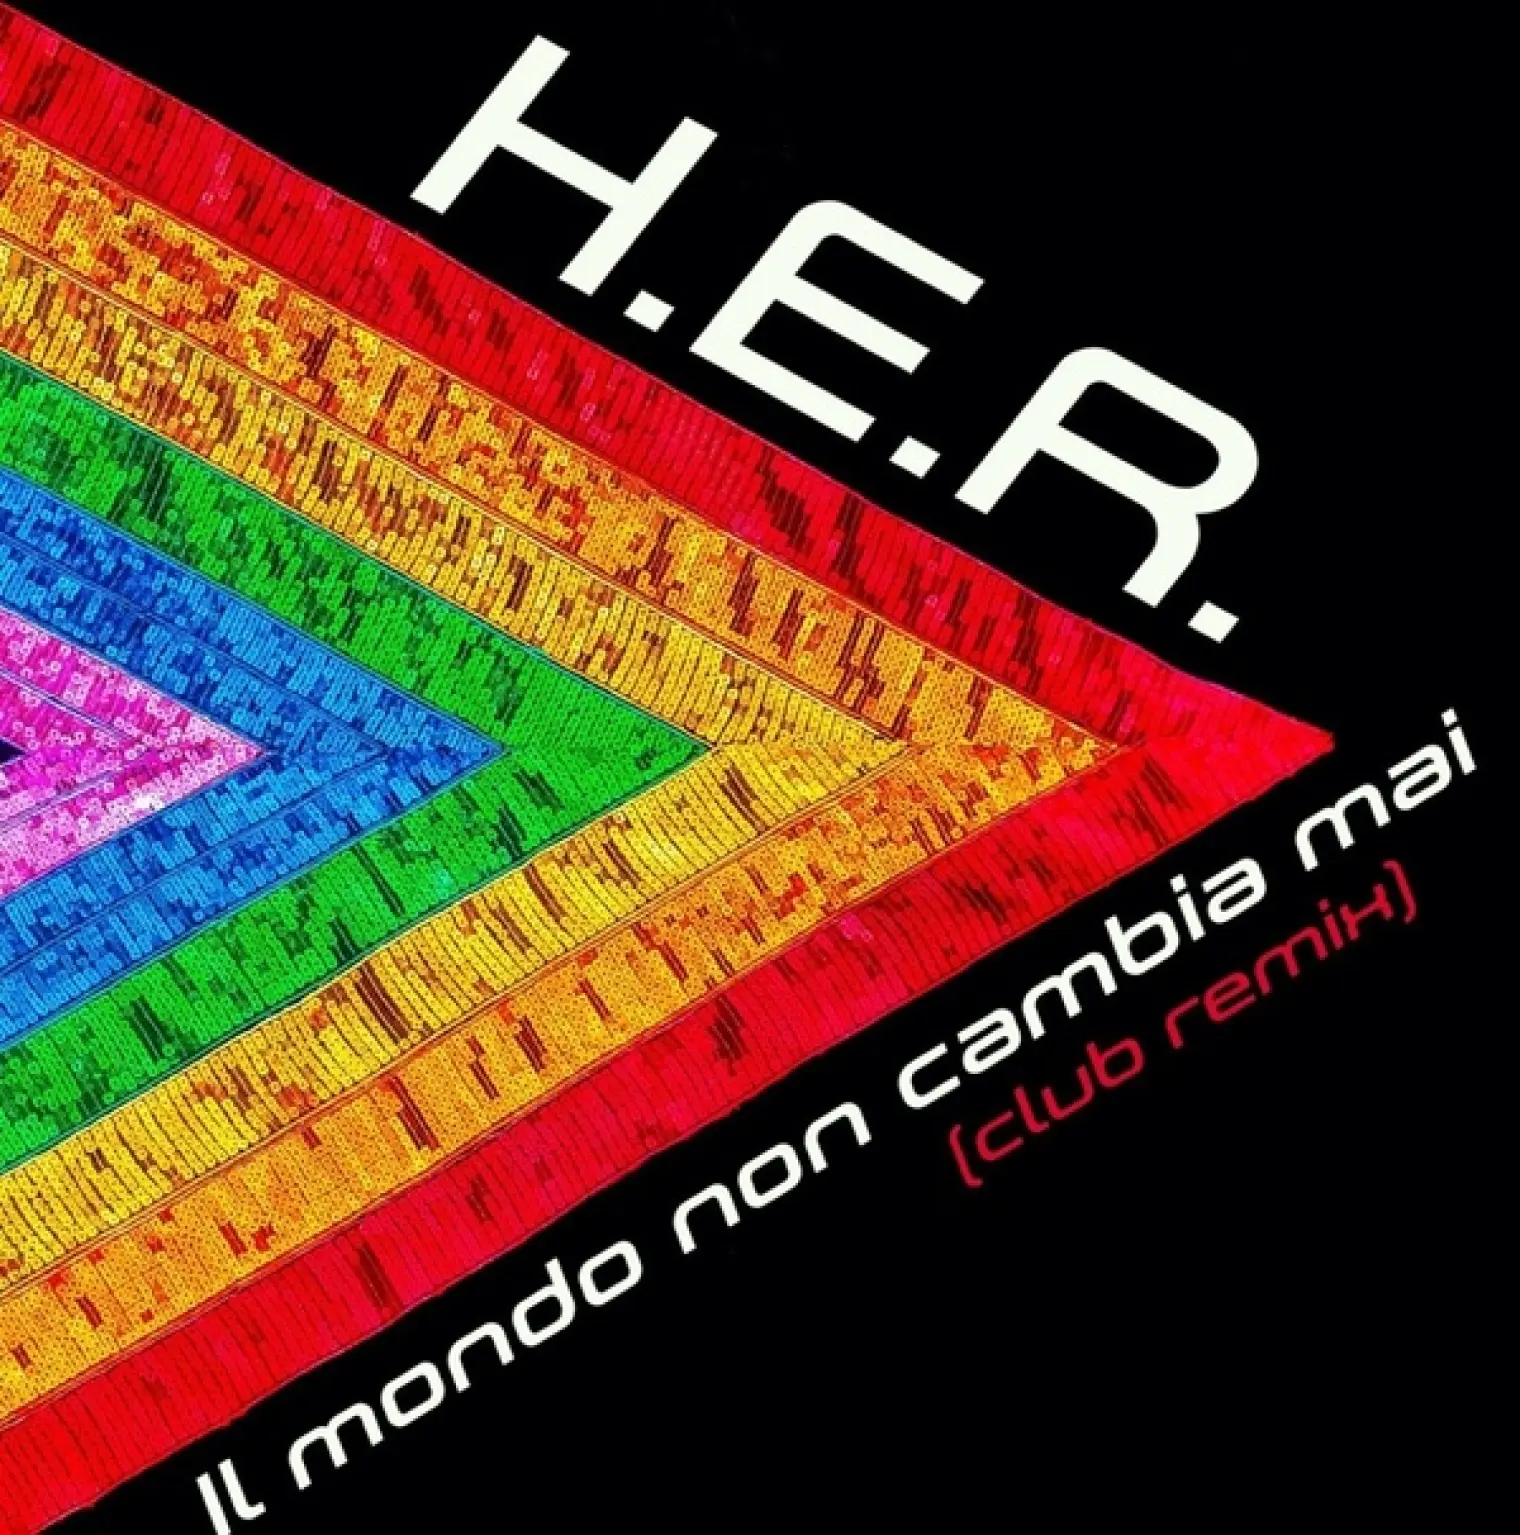 Il mondo non cambia mai (Club Remix) -  H.E.R. 